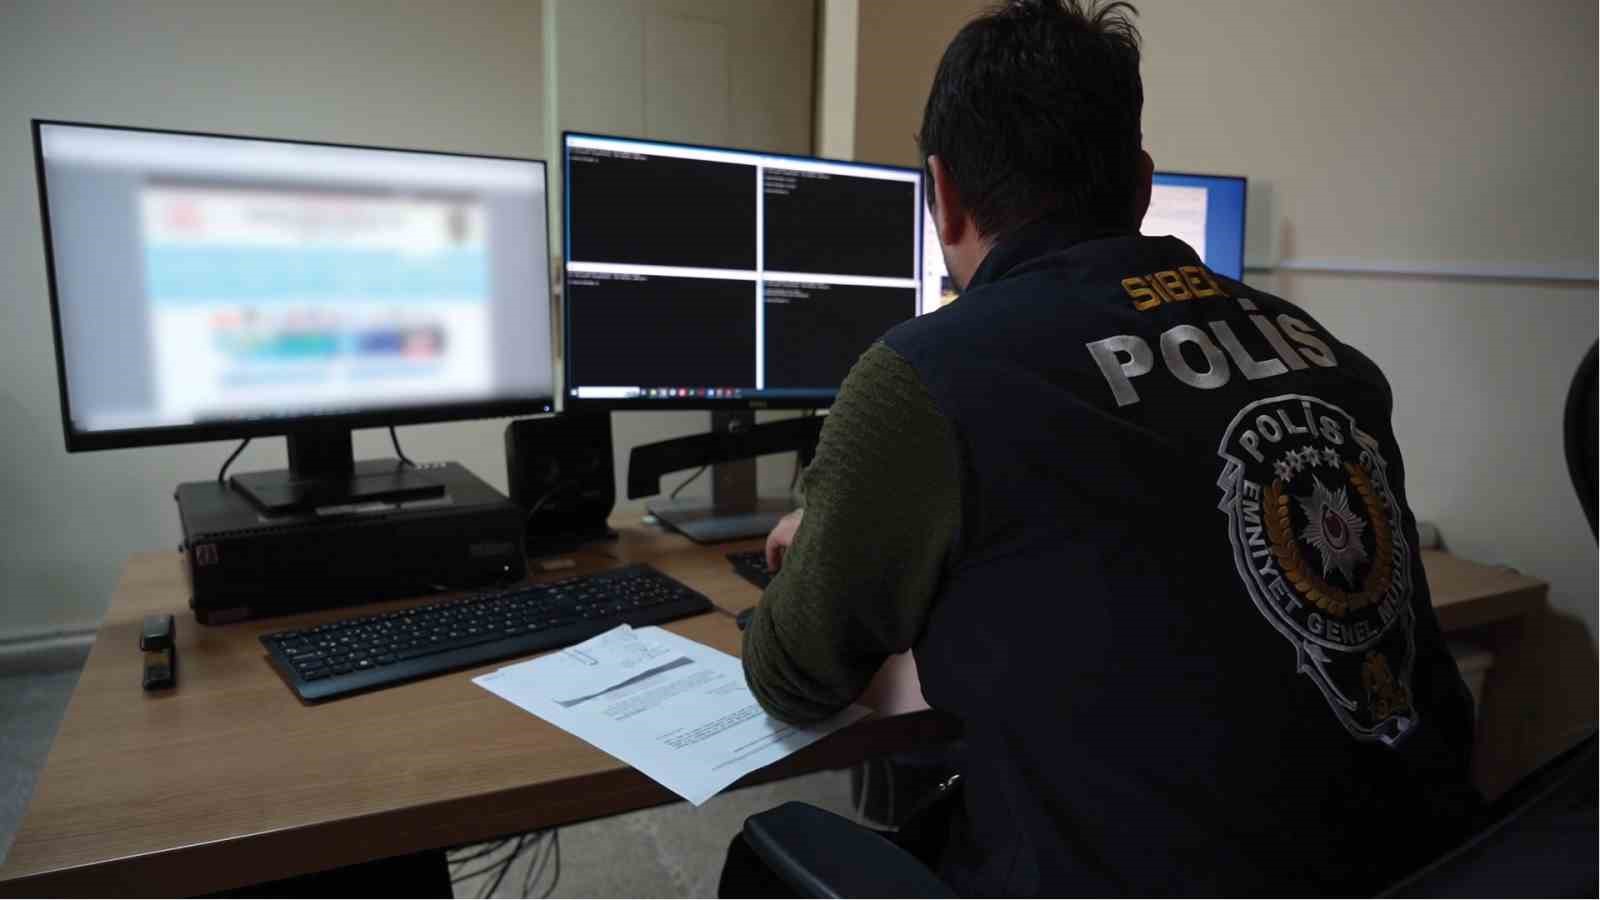 Siber polis, sanal ortamdaki suçluları adım adım takip ediyor
